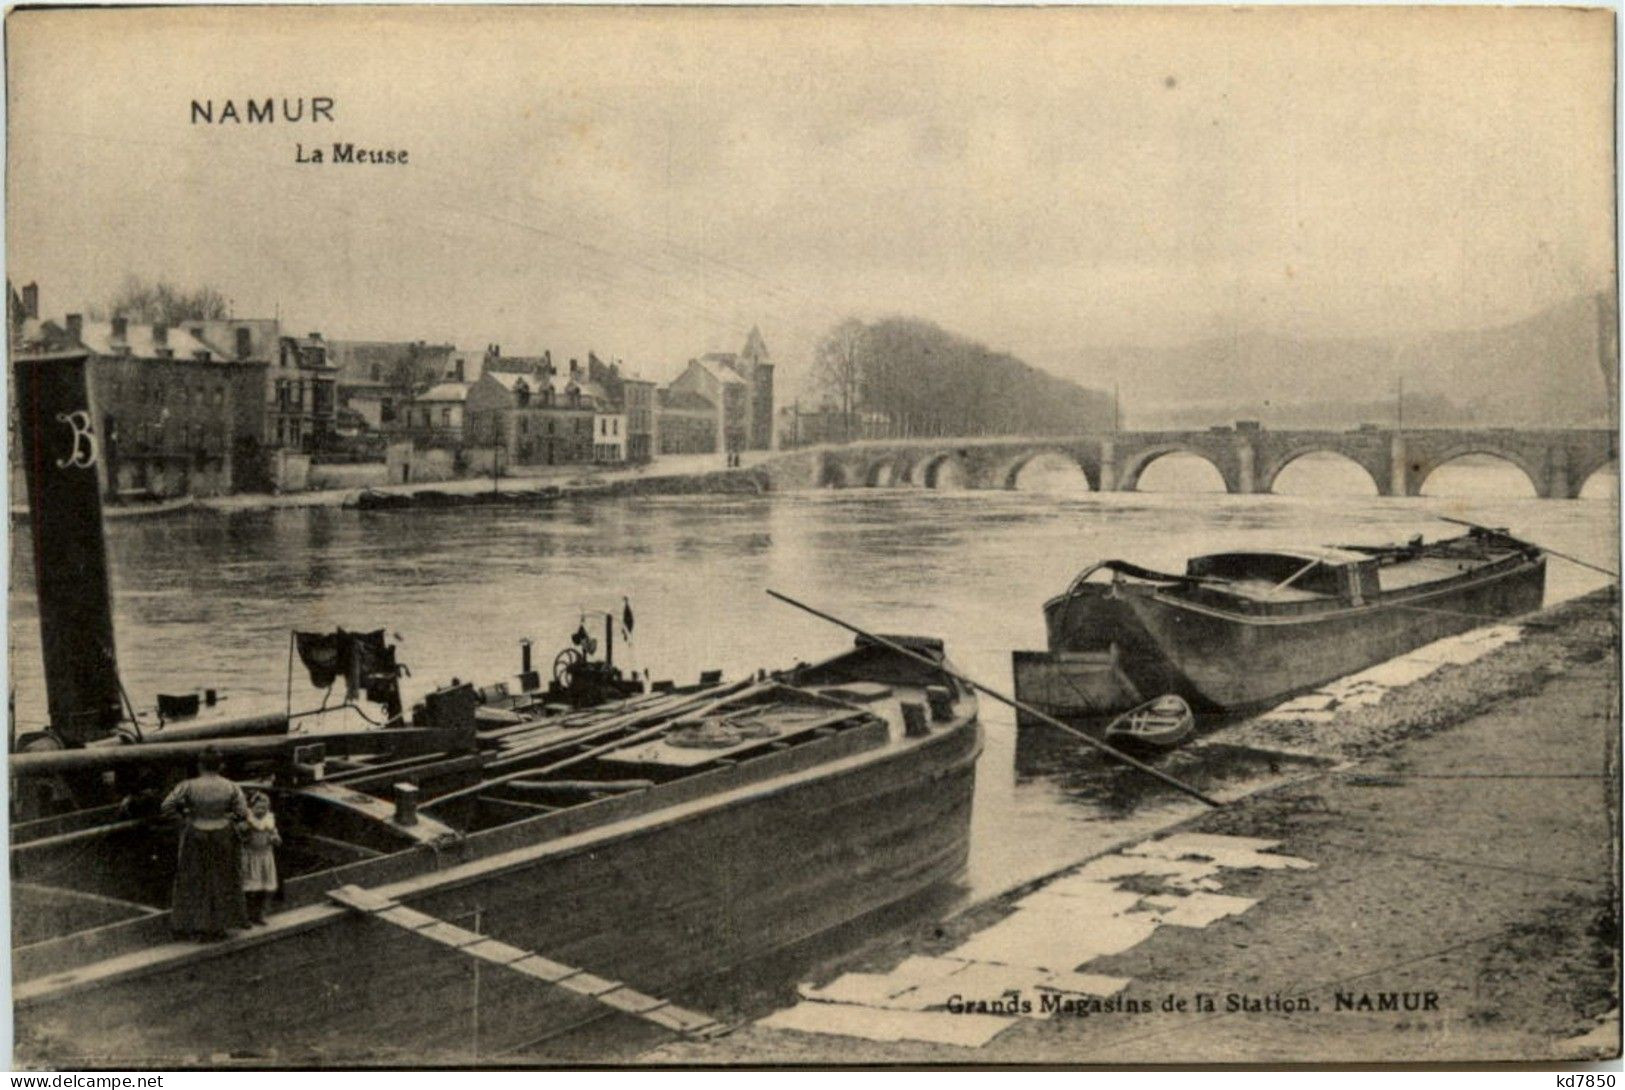 Namur - La Meuse - Namur